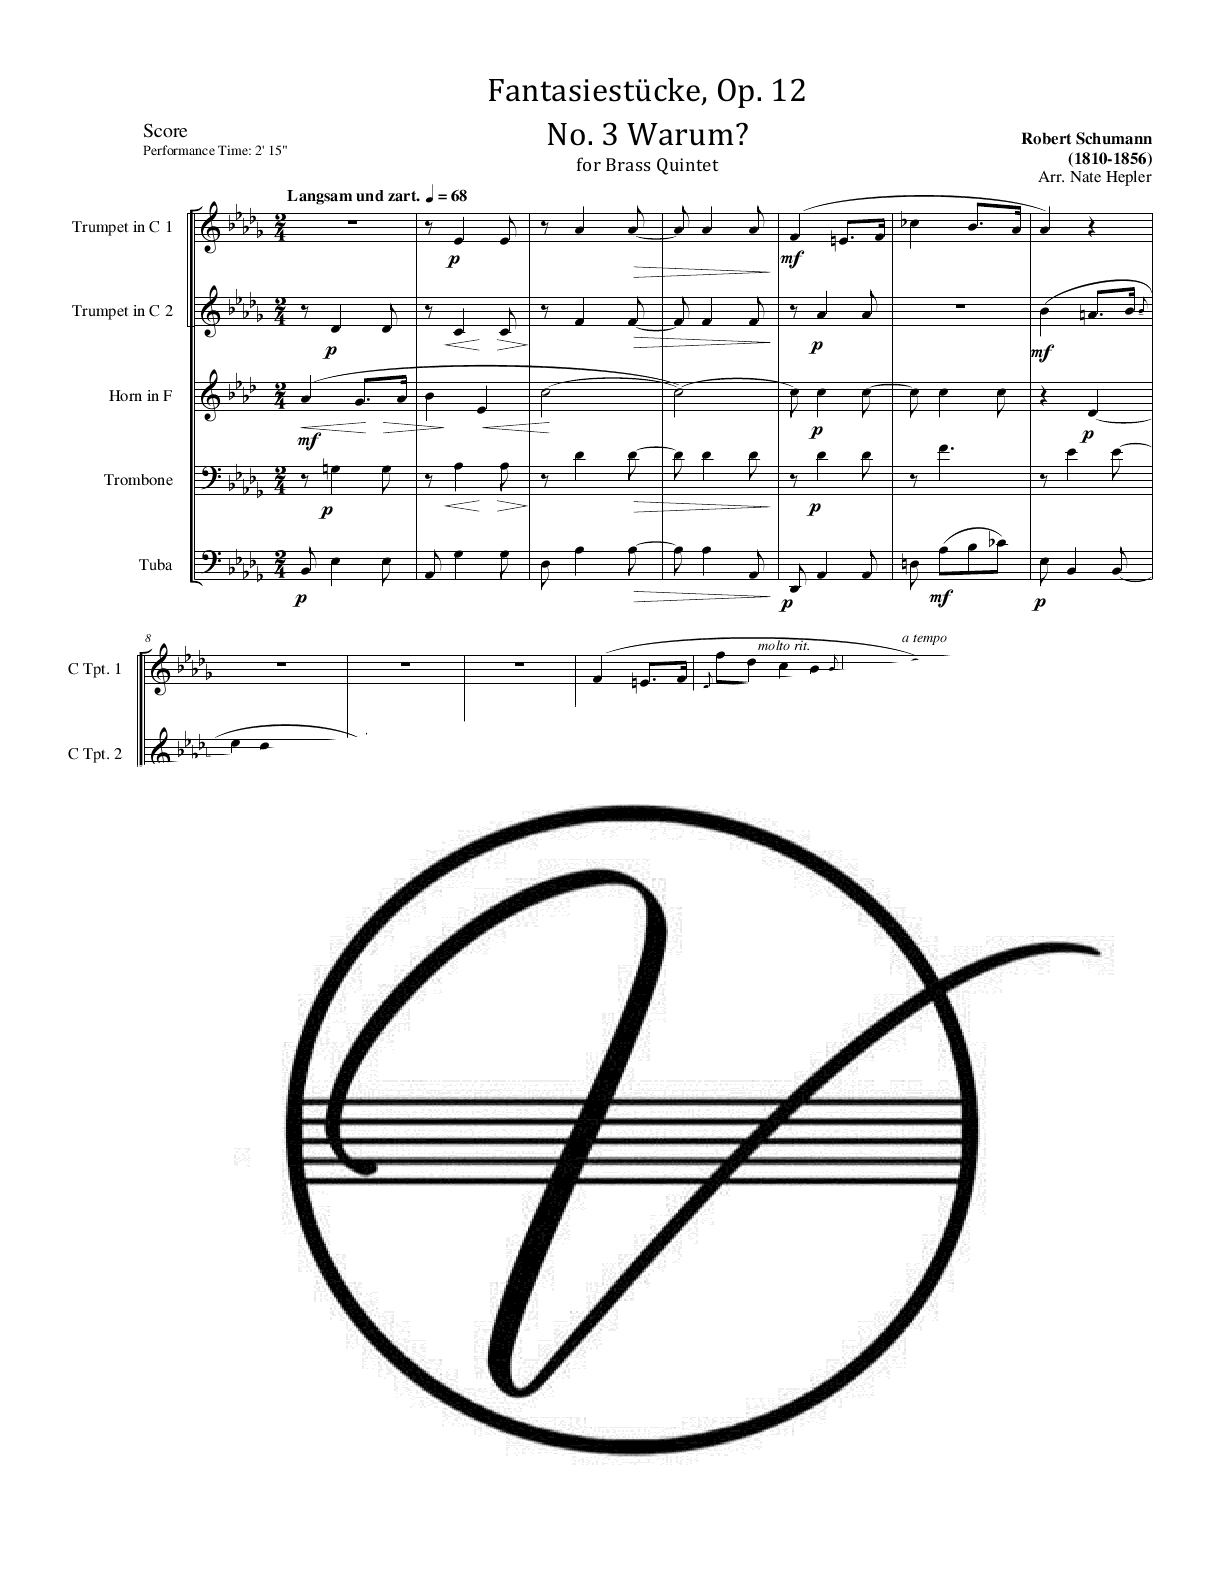 Schumann - Fantasiestucke, Op. 12, No. 3 - Warum? (BQ) - Click Image to Close